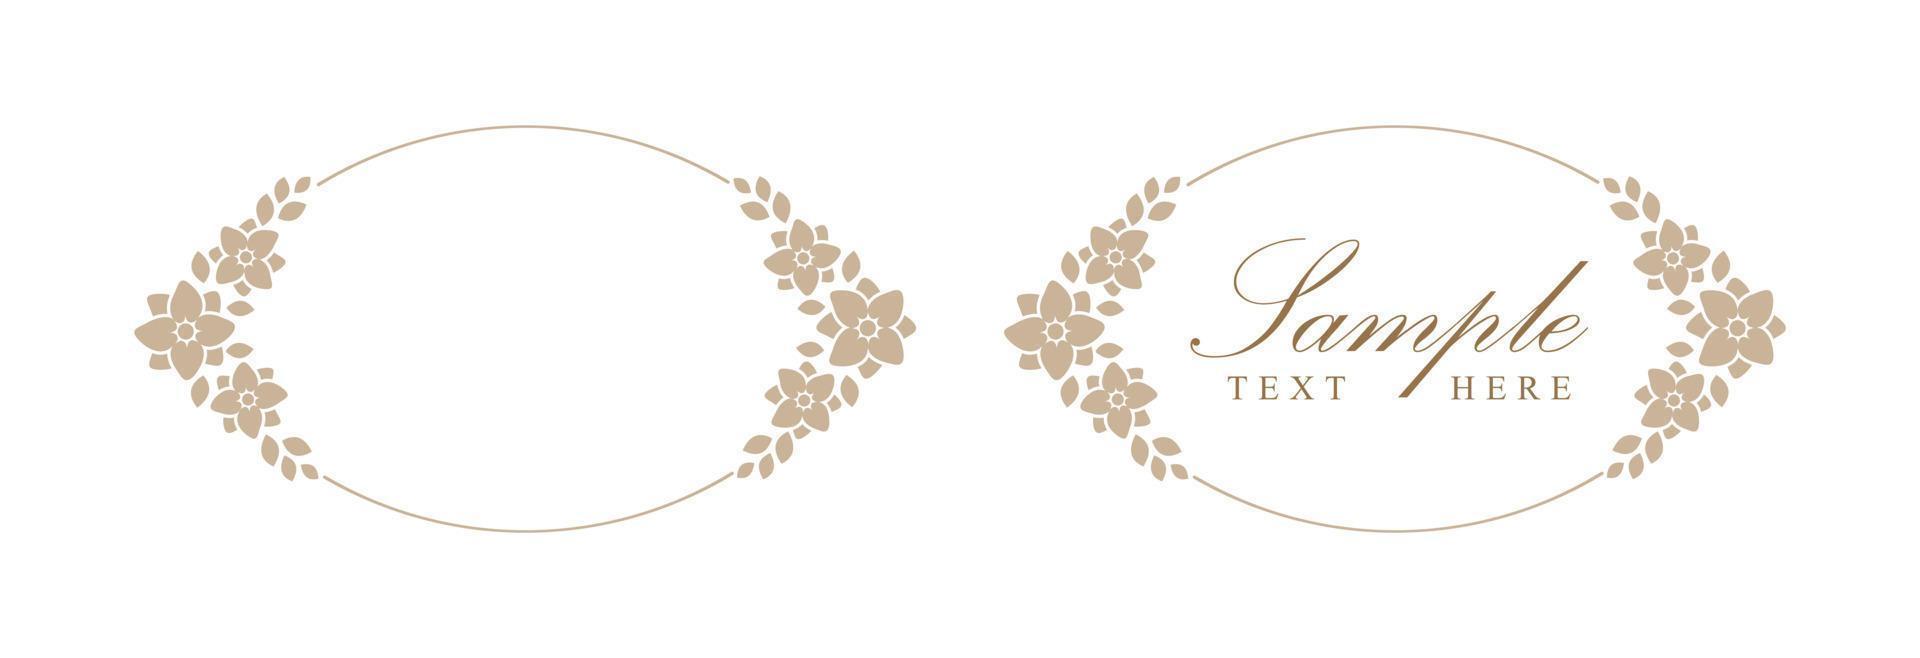 blommig beige båge ram. botanisk boho gräns vektor illustration. enkel elegant romantisk stil för bröllop evenemang, kort design, logotyp, etiketter, social media inlägg, mallar